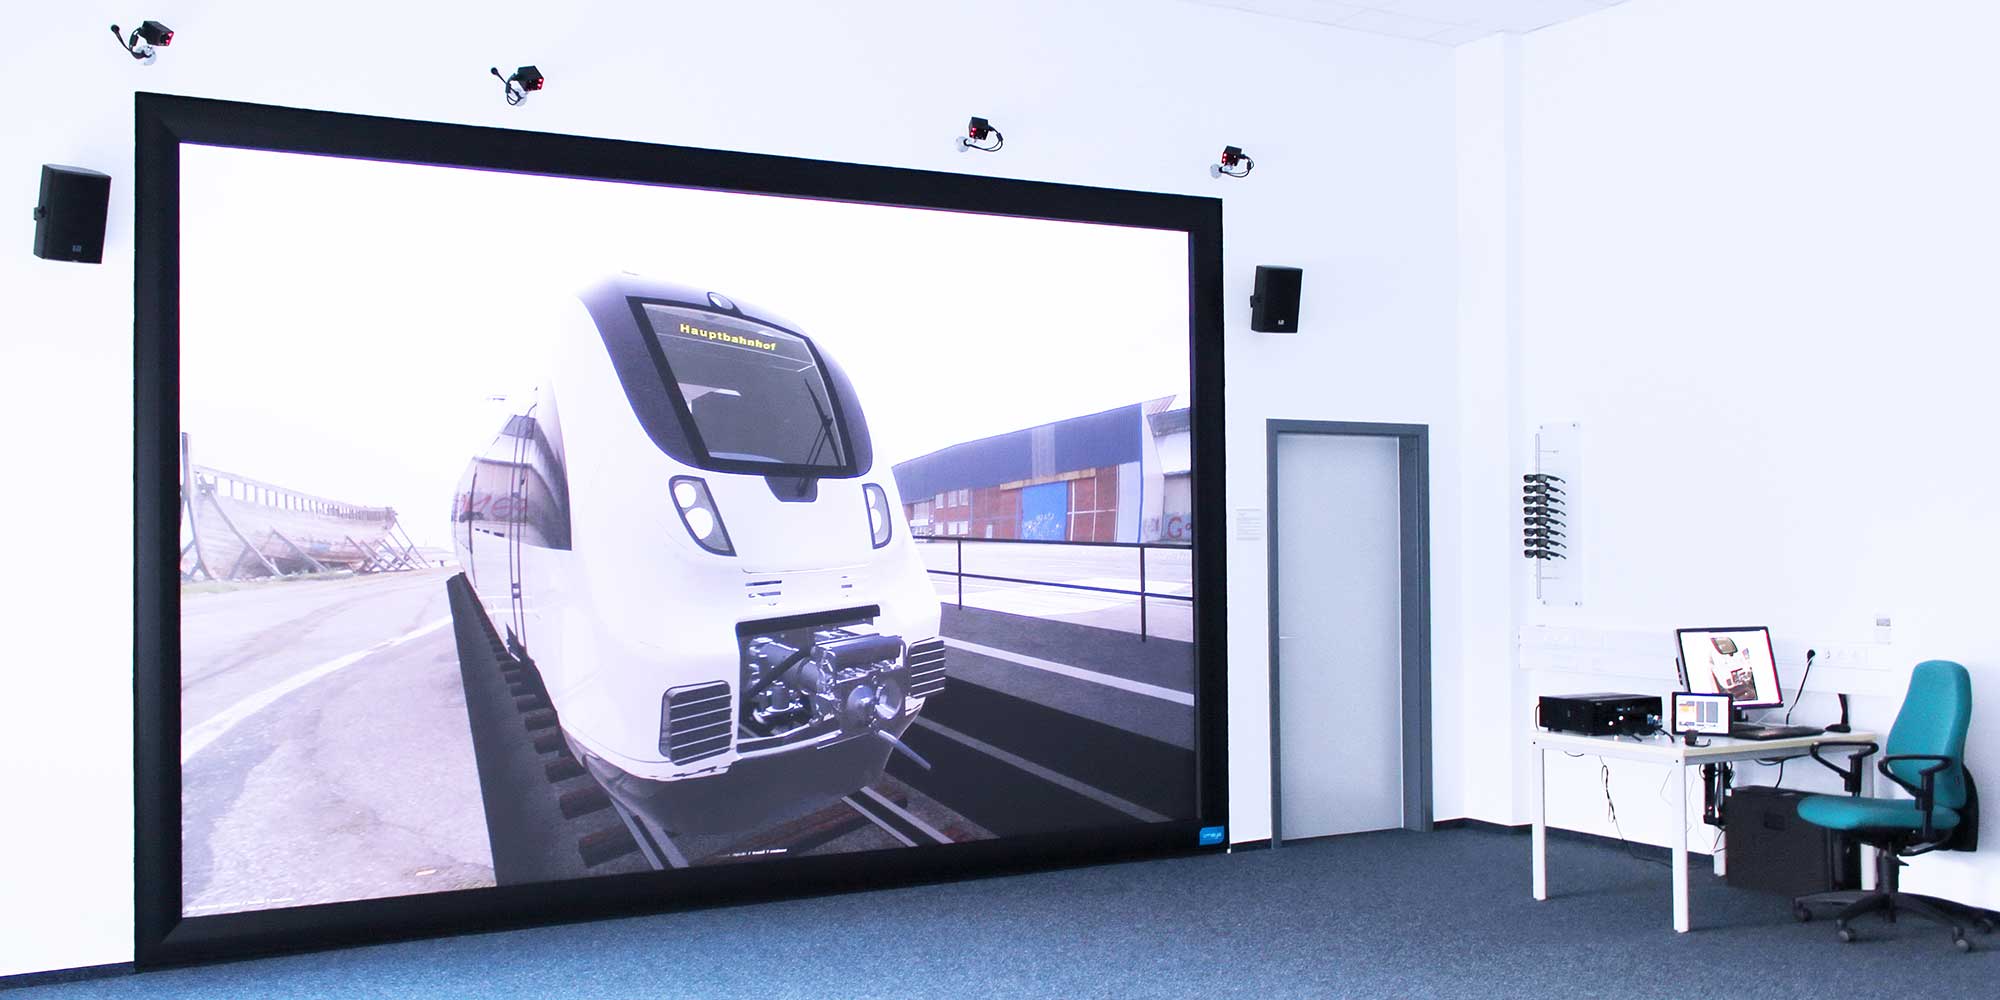 Zentrum für virtuelles Design und Engineering – Bombardier (heute Alstom) | Powerwall